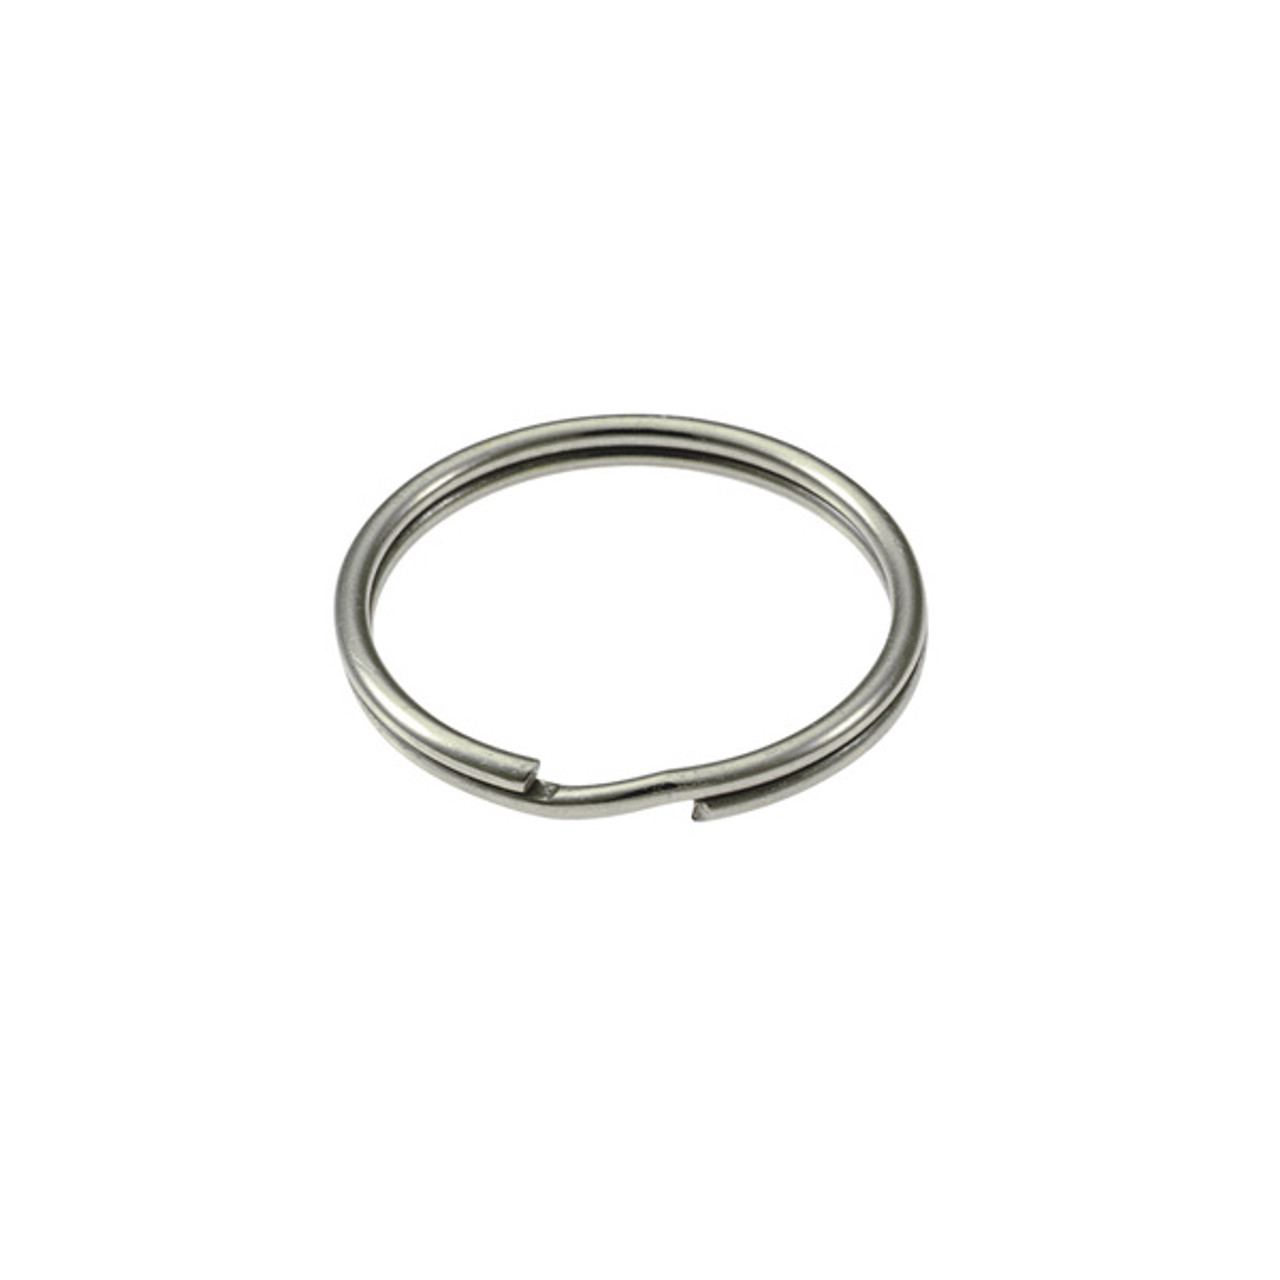 Stainless Steel Split Key Ring 1 Inch Diameter (USA)